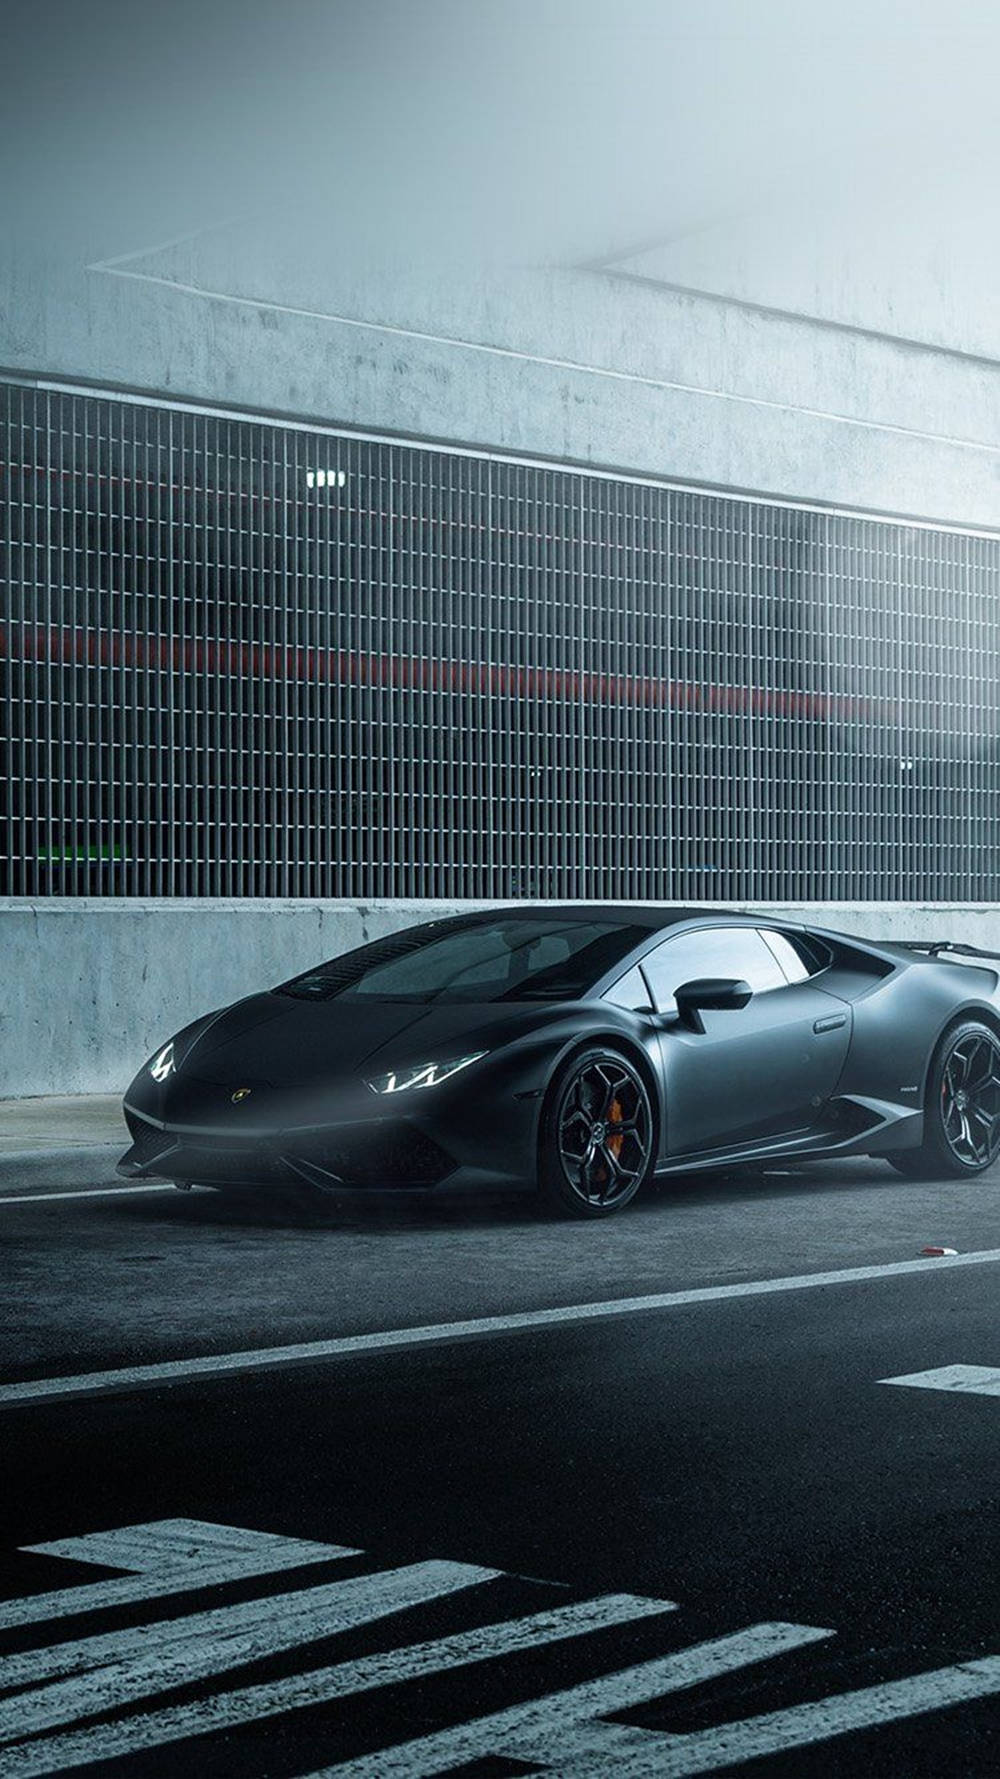 Iphone Lamborghini Matte Black Display